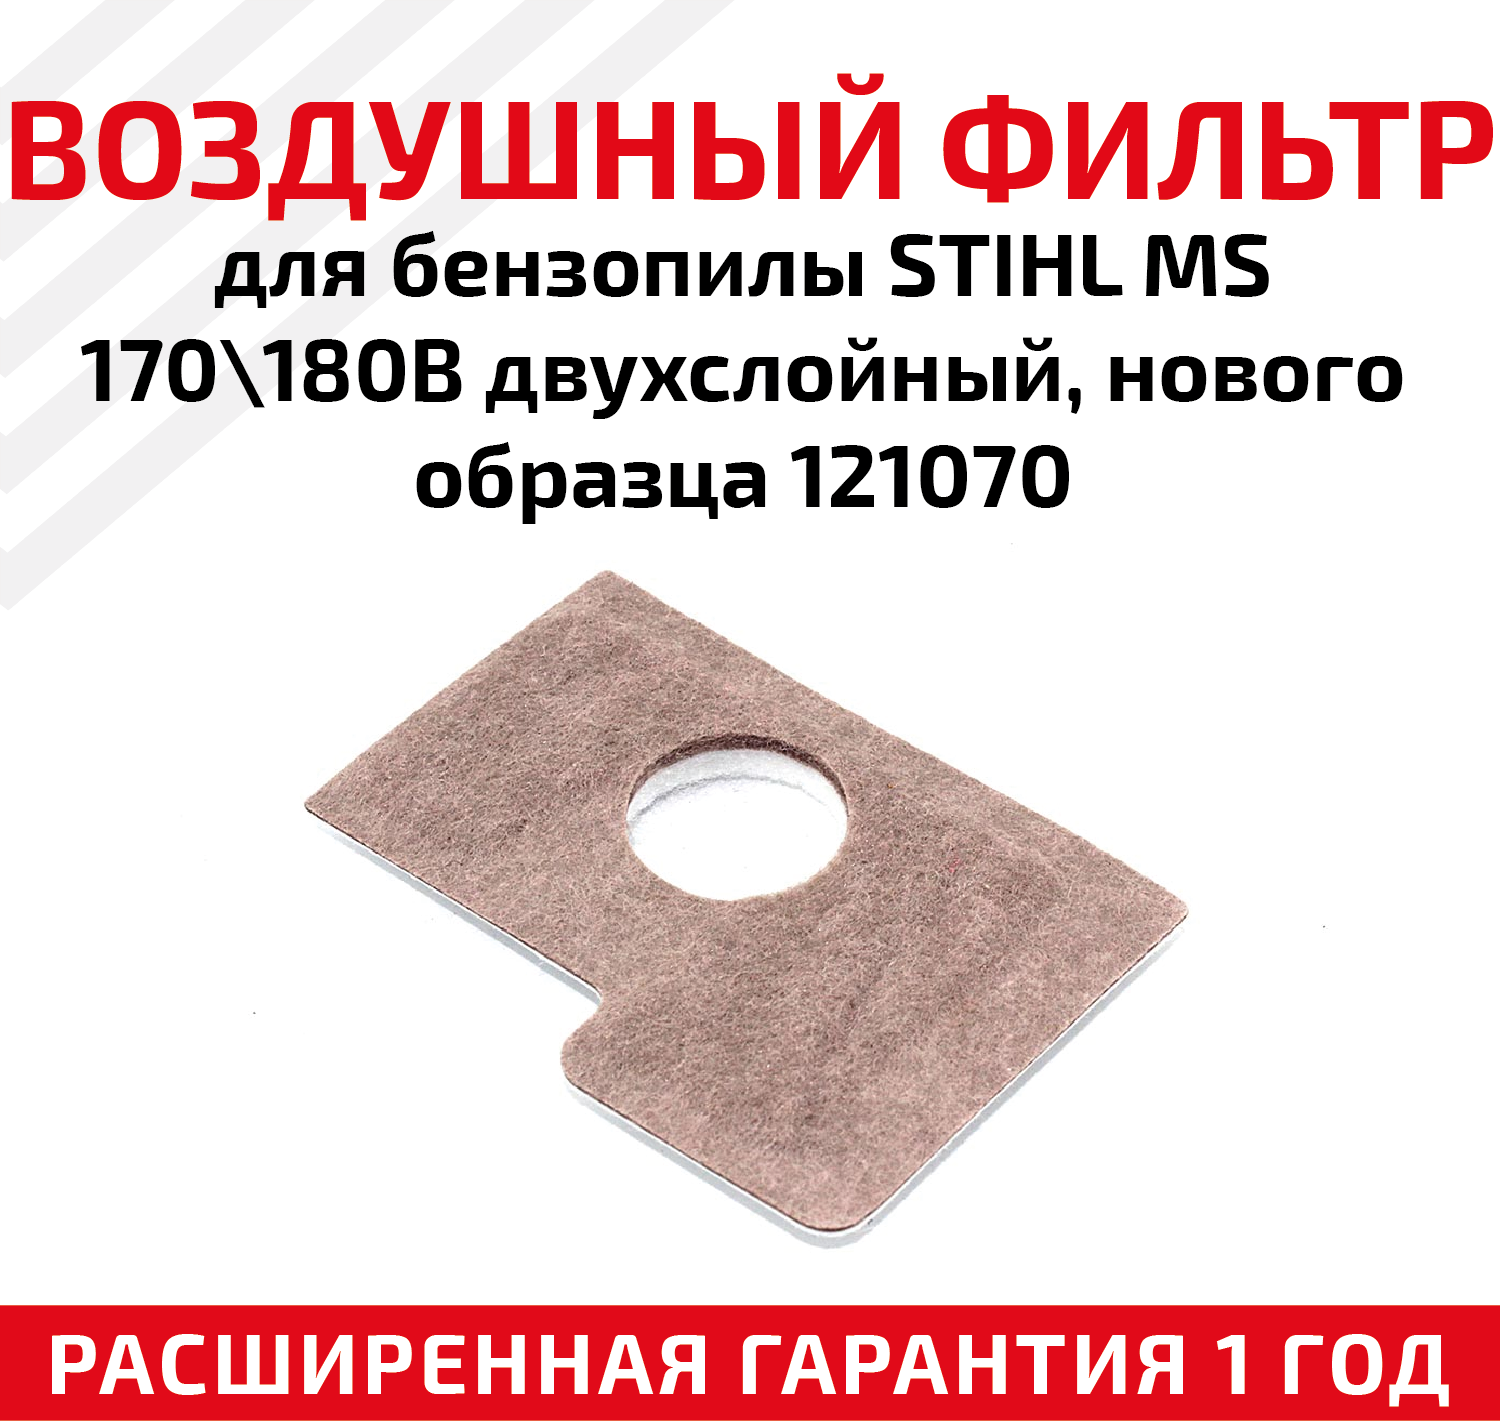 Фильтр воздушный для бензопилы (цепной пилы) Stihl MS 170/180B двухслойный нового образца 121070